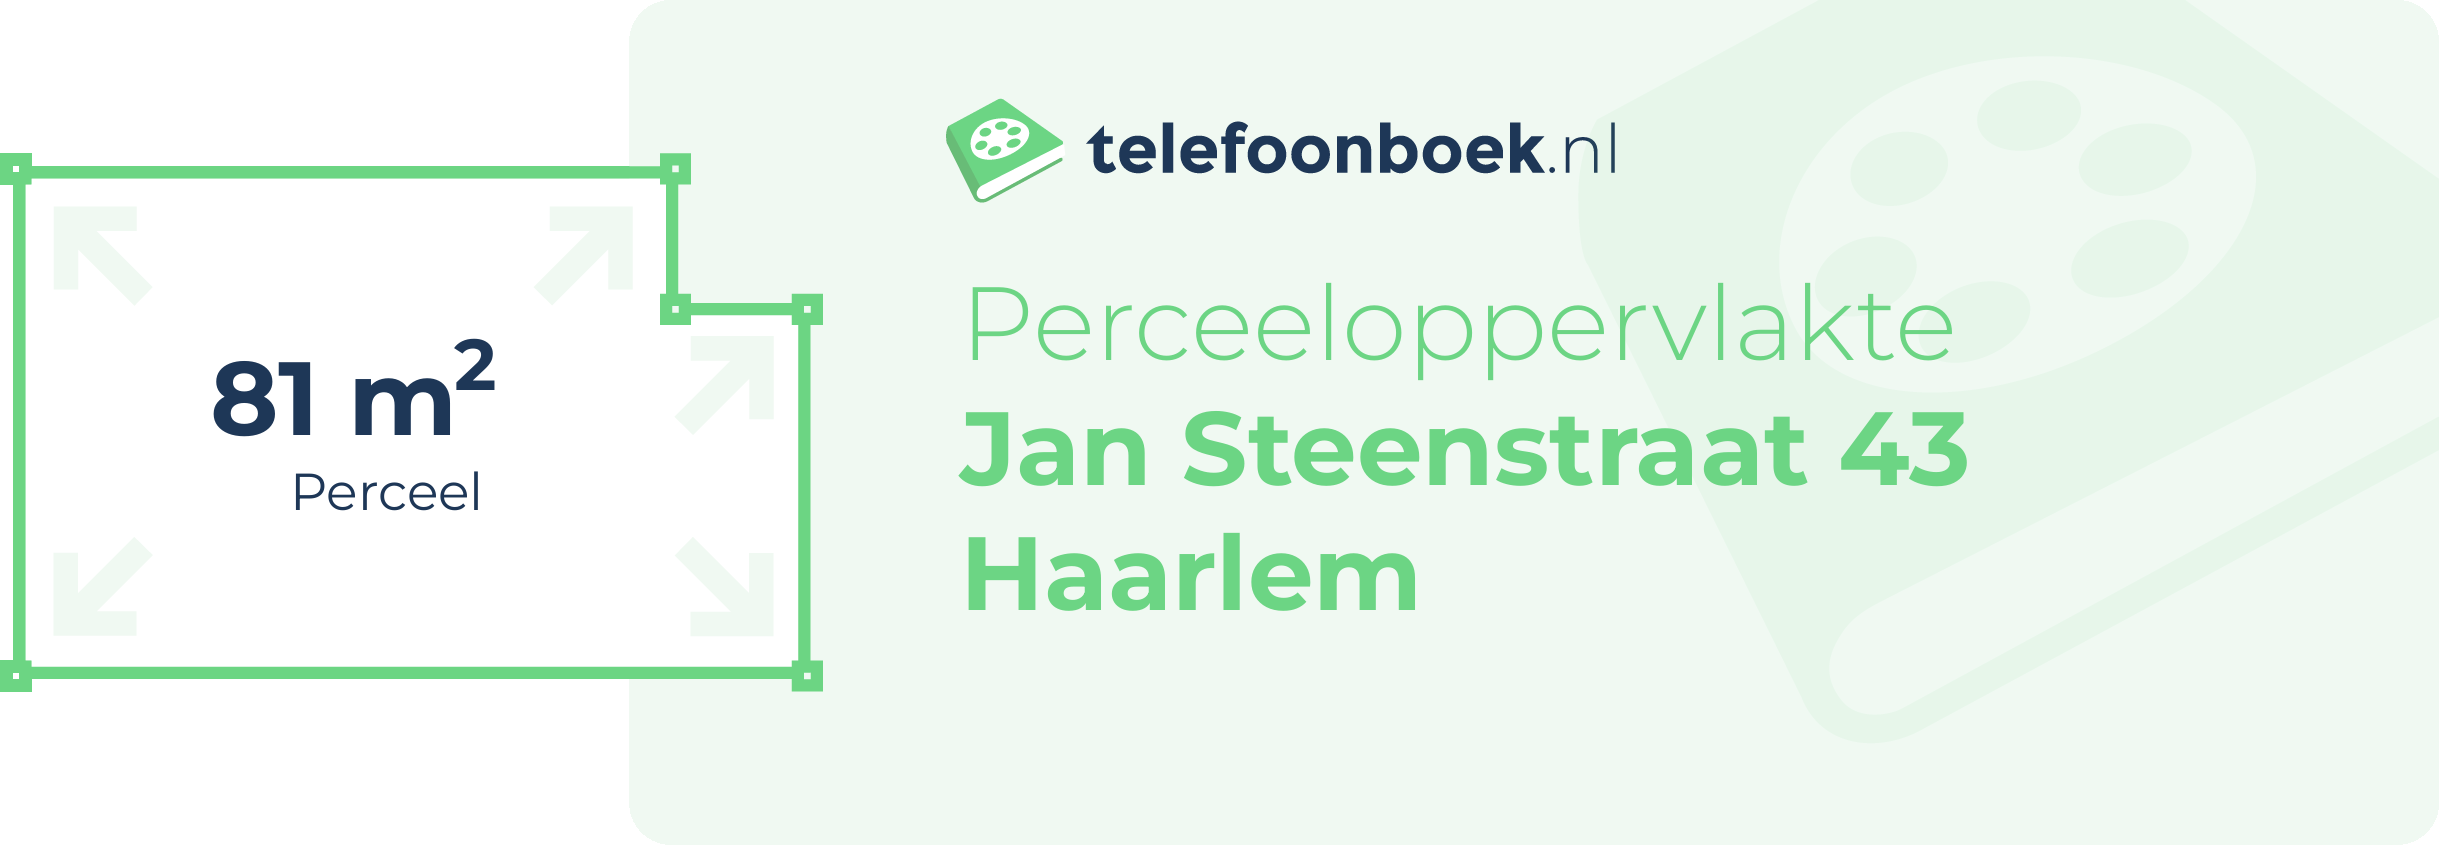 Perceeloppervlakte Jan Steenstraat 43 Haarlem